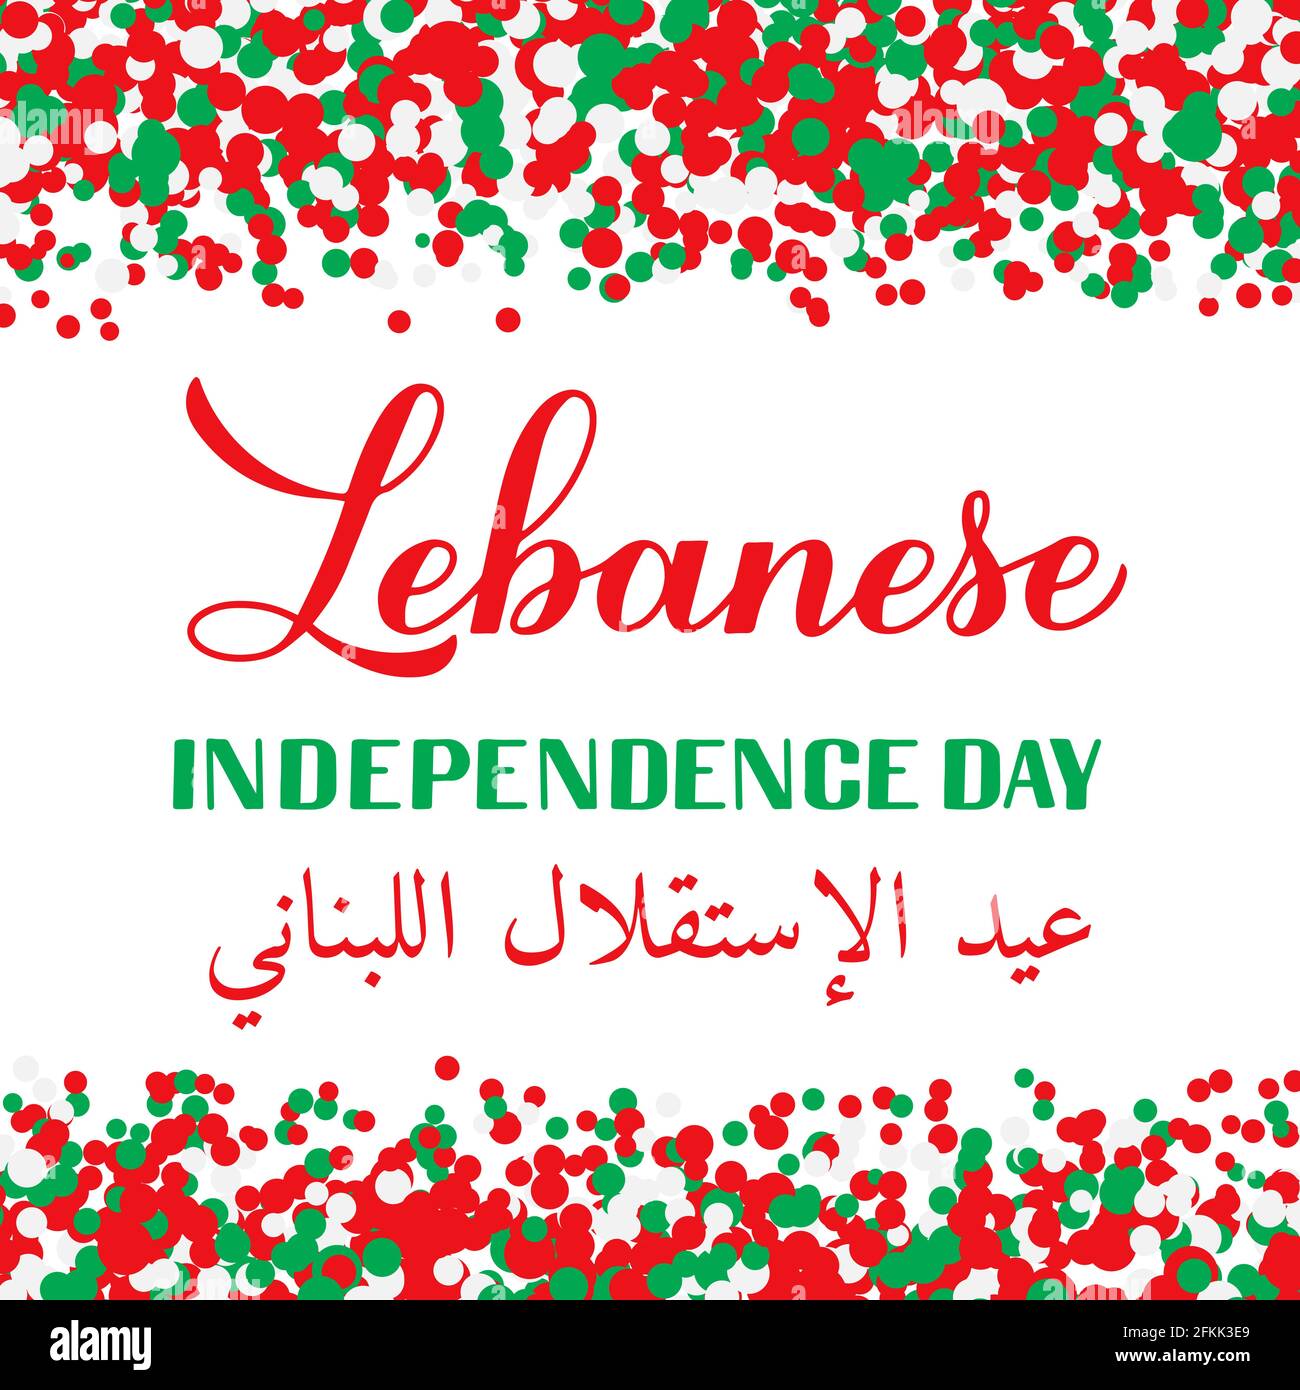 Le jour de l'indépendance du Liban est en anglais et en arabe. Fête libanaise le 22 novembre. Modèle vectoriel facile à modifier pour la typographie p Illustration de Vecteur